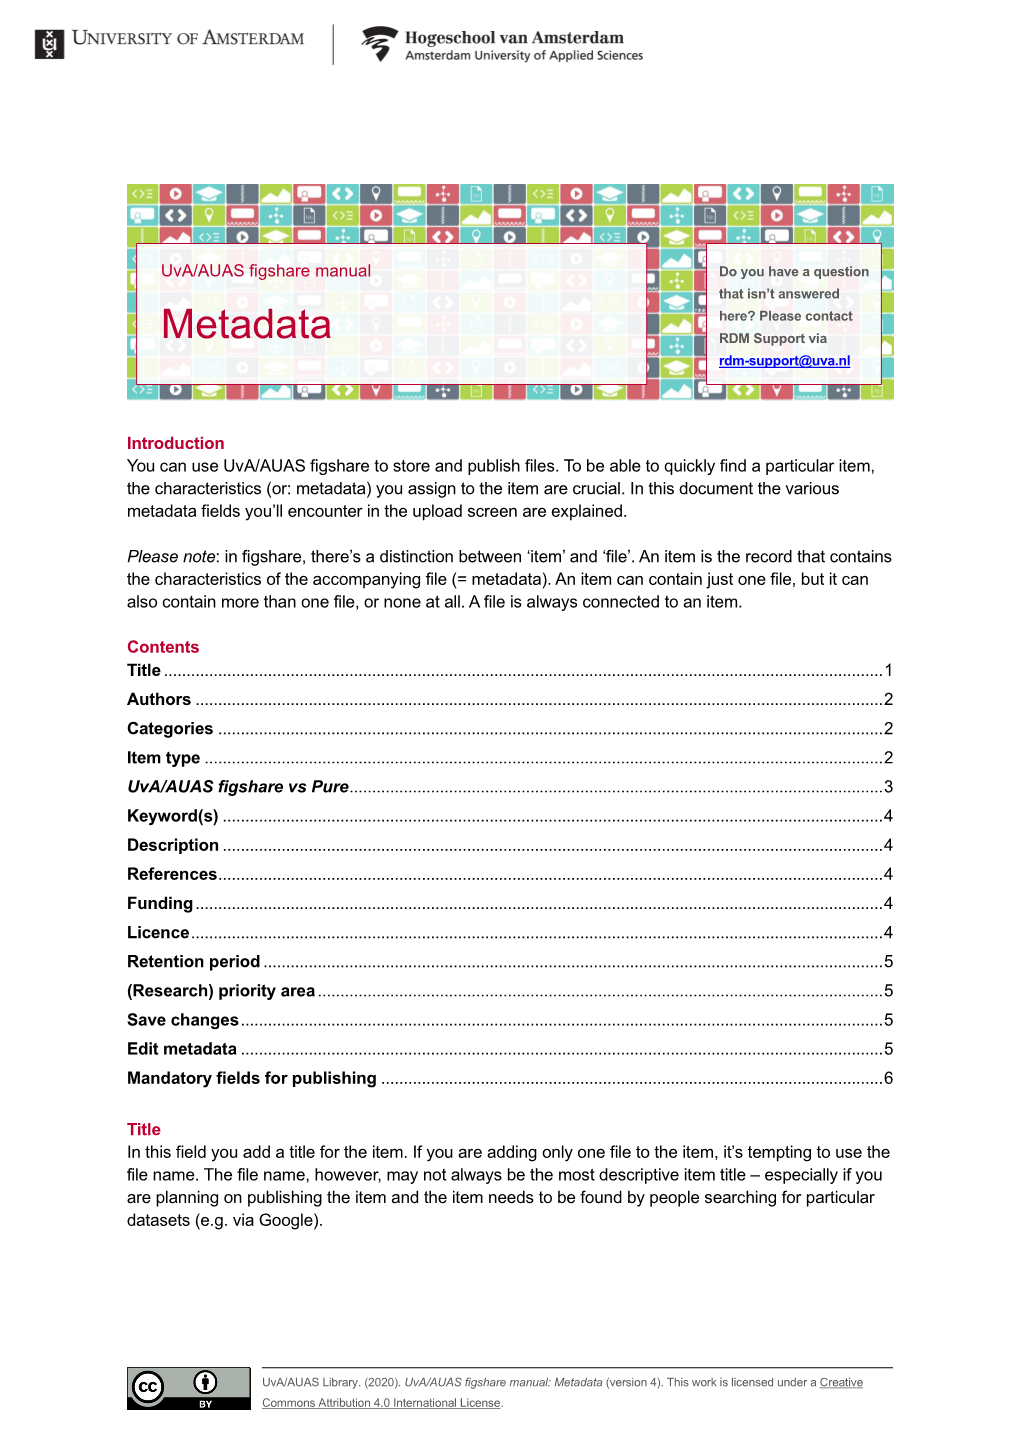 Manual: Metadata (Version 4)